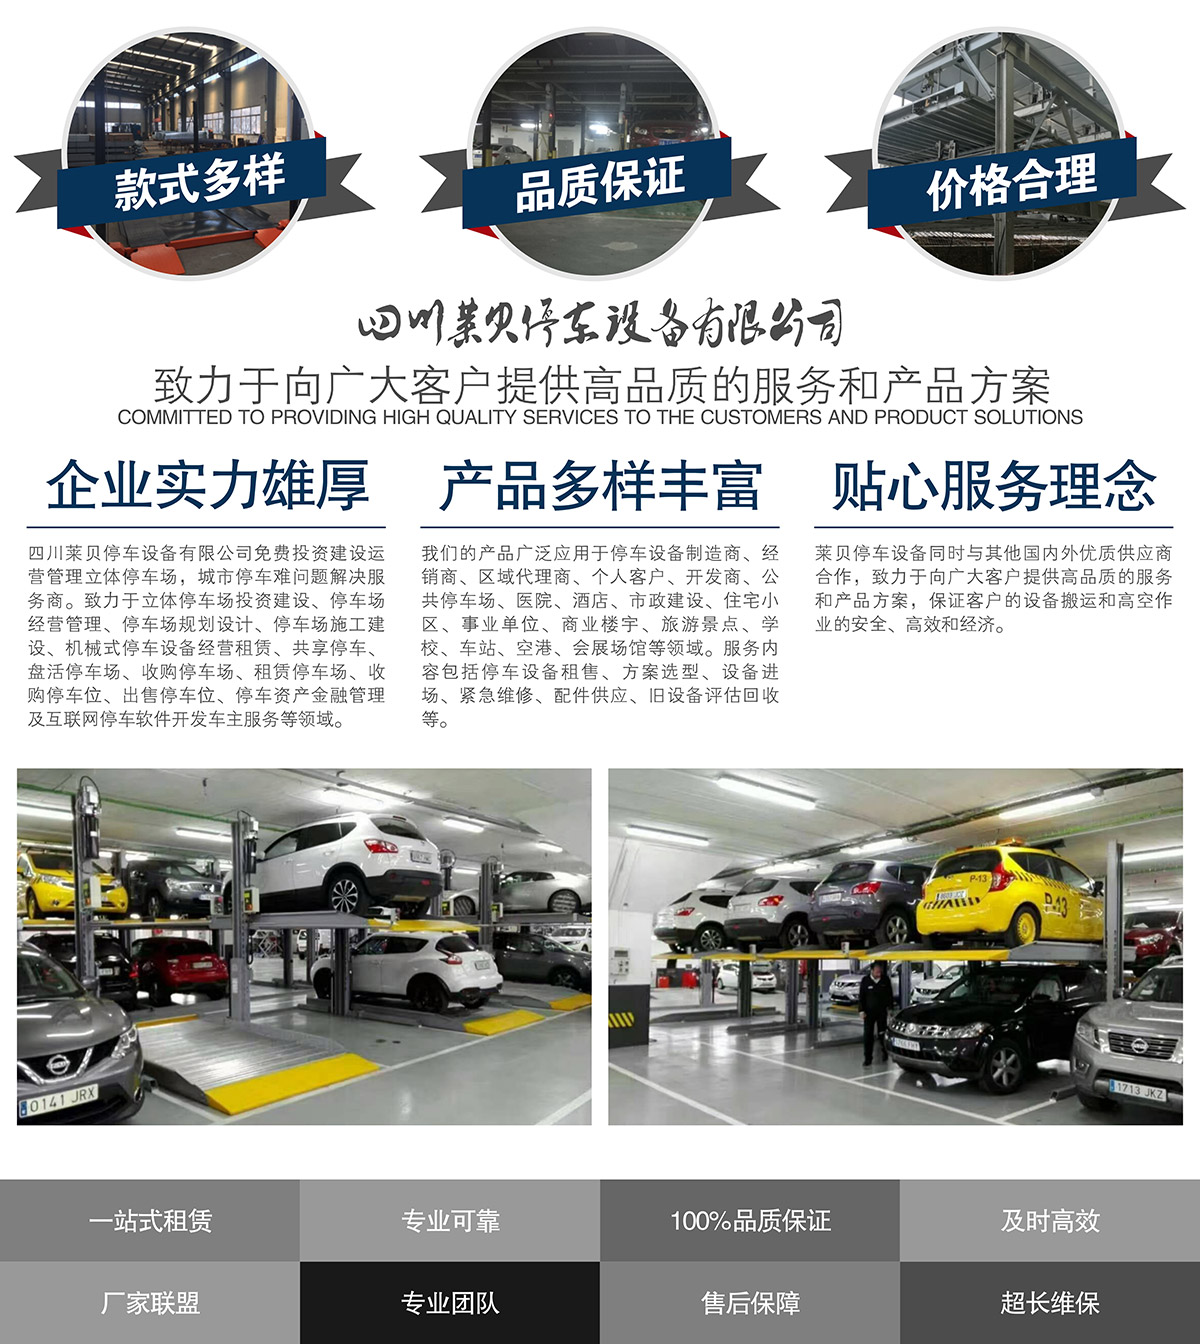 云南莱贝停车场投资经营提供高品质的服务和产品方案.jpg